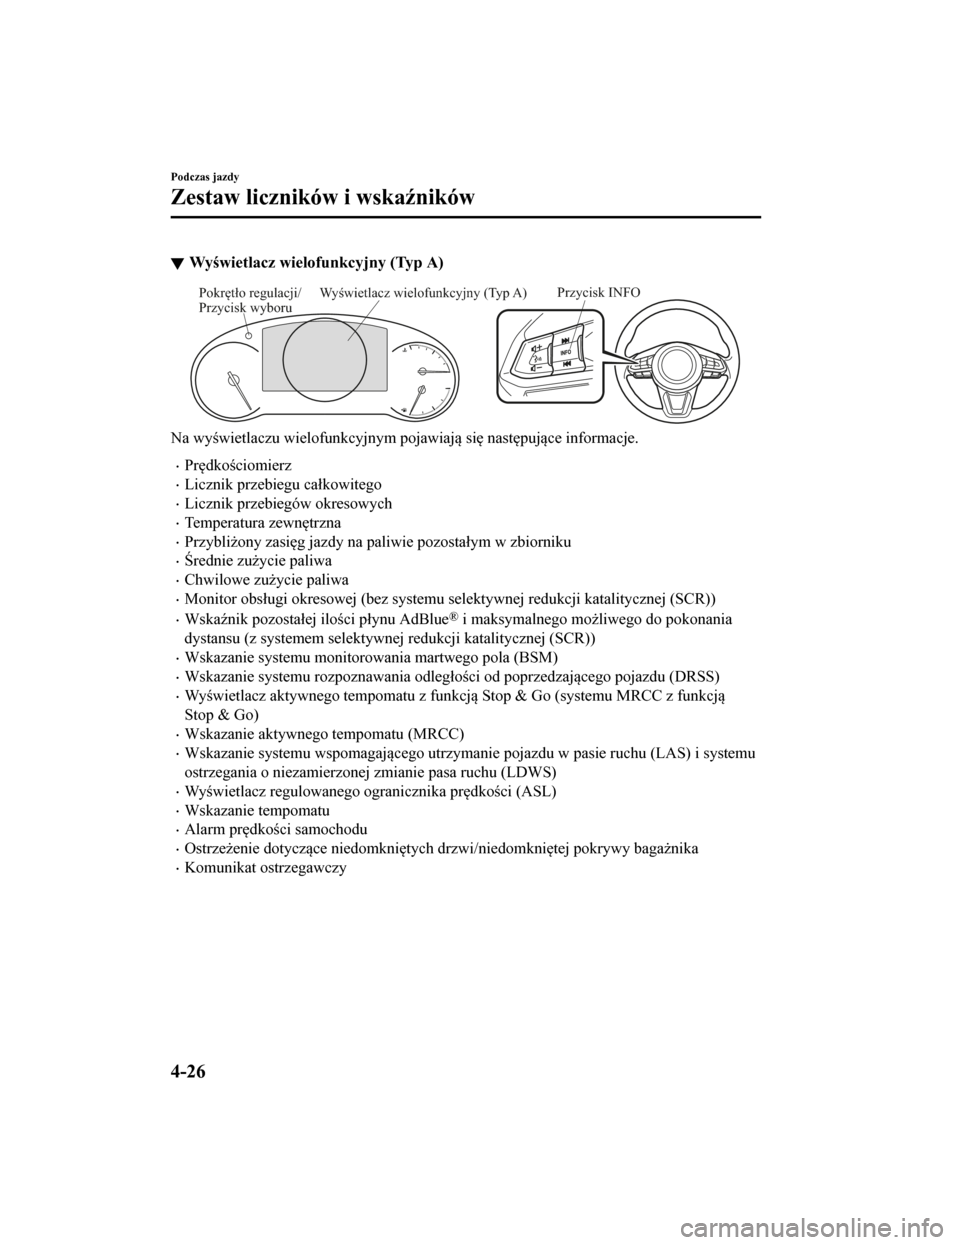 MAZDA MODEL CX-5 2019  Instrukcja Obsługi (in Polish) Wyświetlacz wielofunkcyjny (Typ A)
Przycisk INFOWyświetlacz wielofunkcyjny (Typ A)
Pokrętło regulacji/ 
Przycisk wyboru
Na wyświetlaczu wielofunkcyjnym  pojawiają się następujące informacje.
